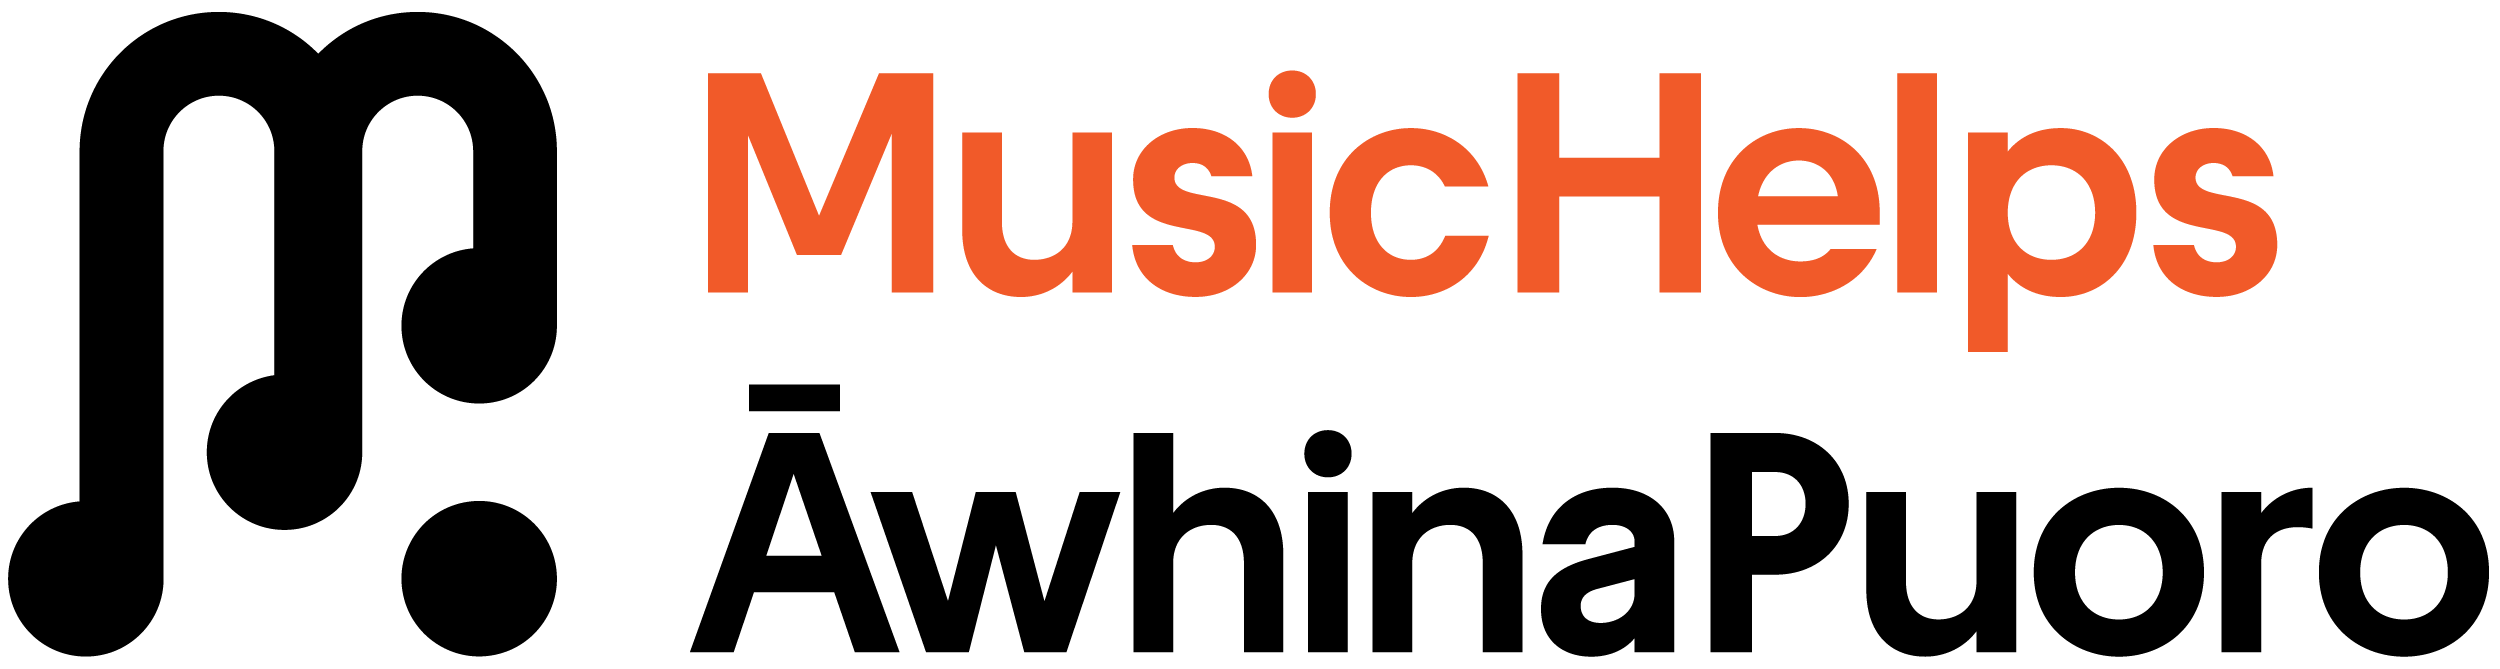 MusicHelps Logo